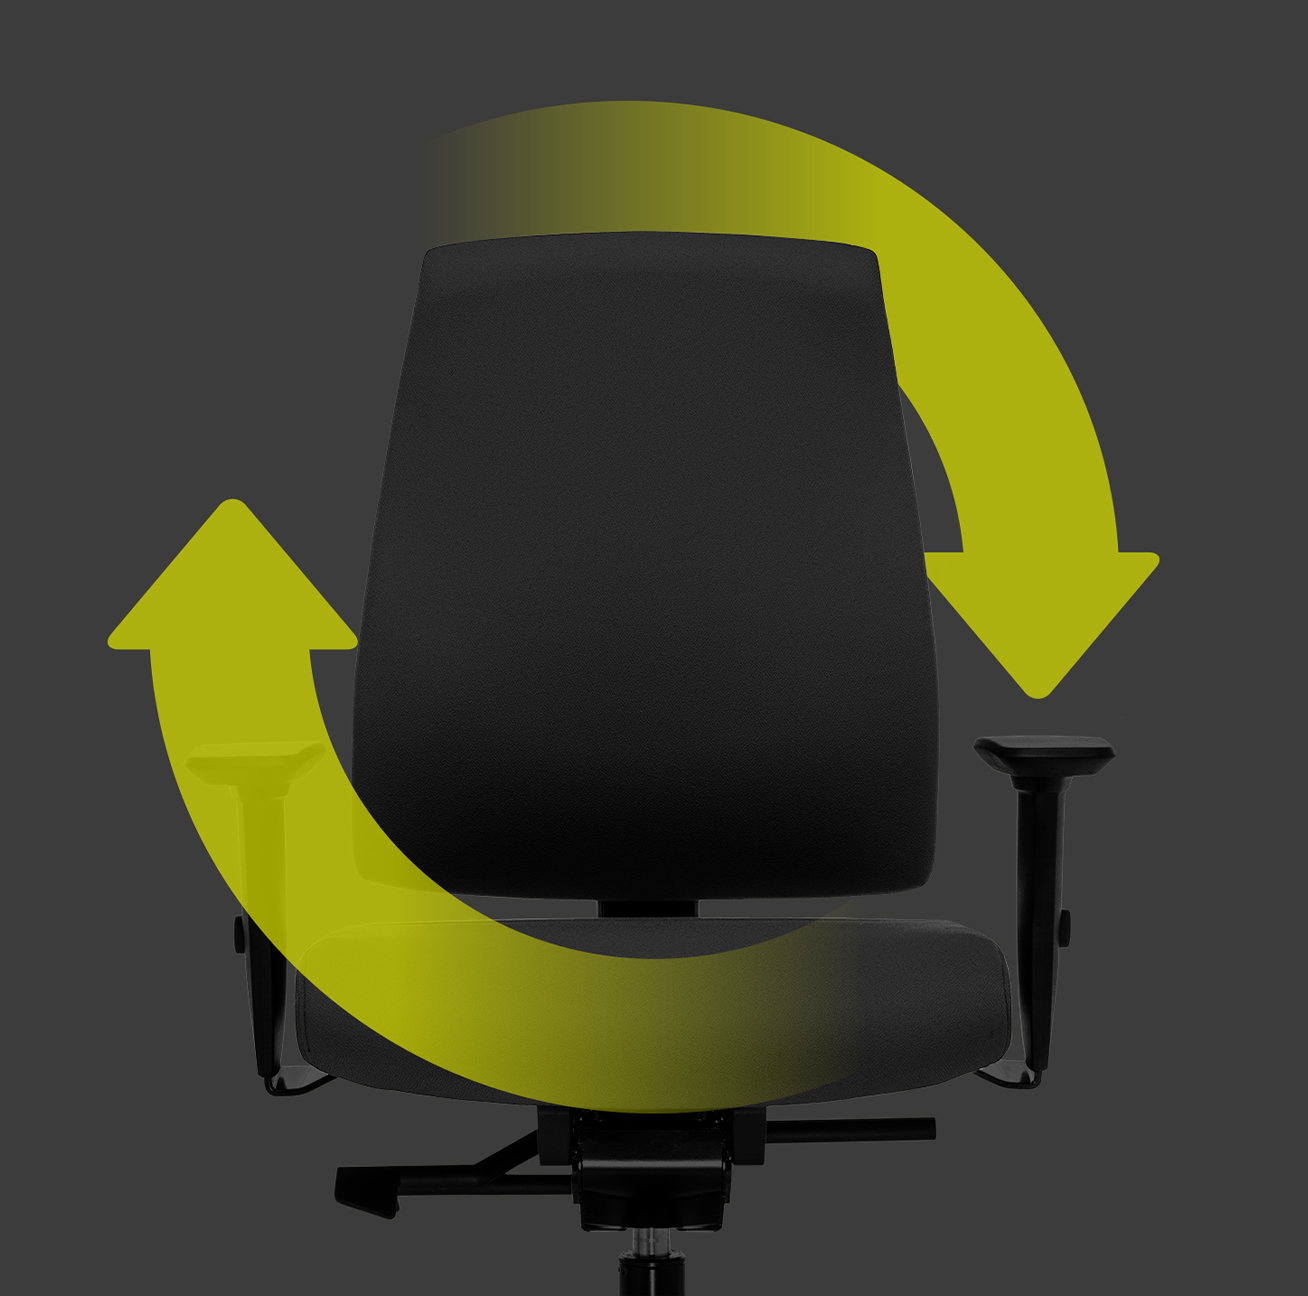 Ergonomische draaistoel Goal in zijaanzicht met zwarte gestoffeerde rug, zwarte zittingbekleding, zwarte T-armleggers en kunststof delen in zwart (o.a. voetkruis en steunbuis) met twee groene pijlen die rondom de stoel een cirkel vormen. Dit geeft de duurzaamheid en herbruikbaarheid van de stoel aan. | by Hans-Georg Piorek